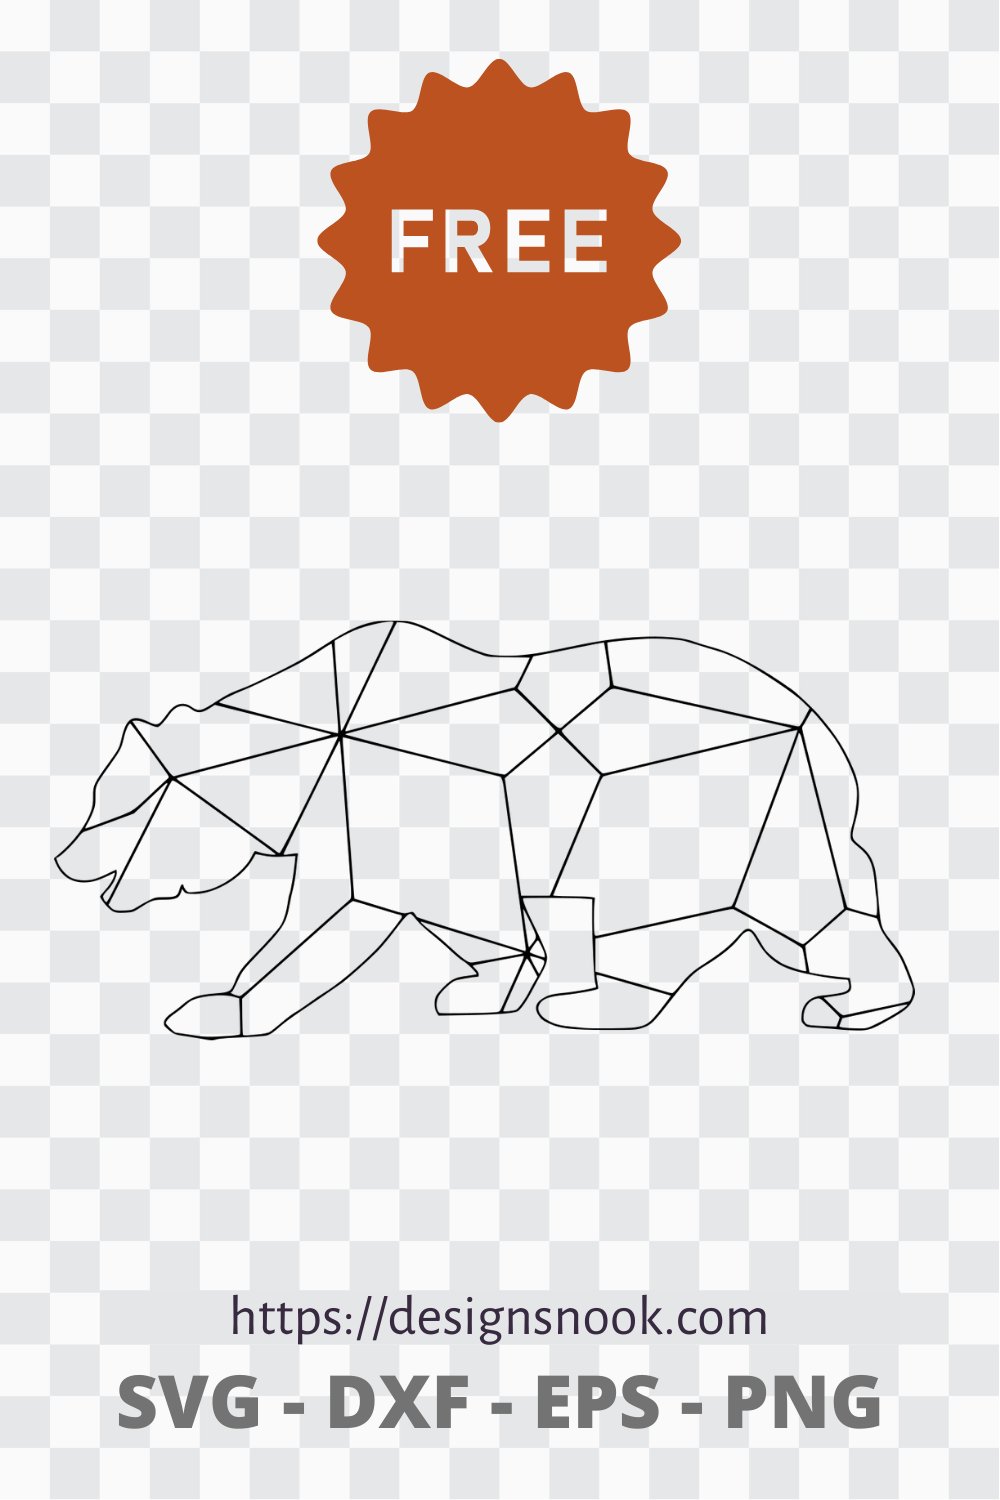 Download Geometric Bear Svg Free Svg Download Free Animal Svg Wildlife Svg D Designs Nook